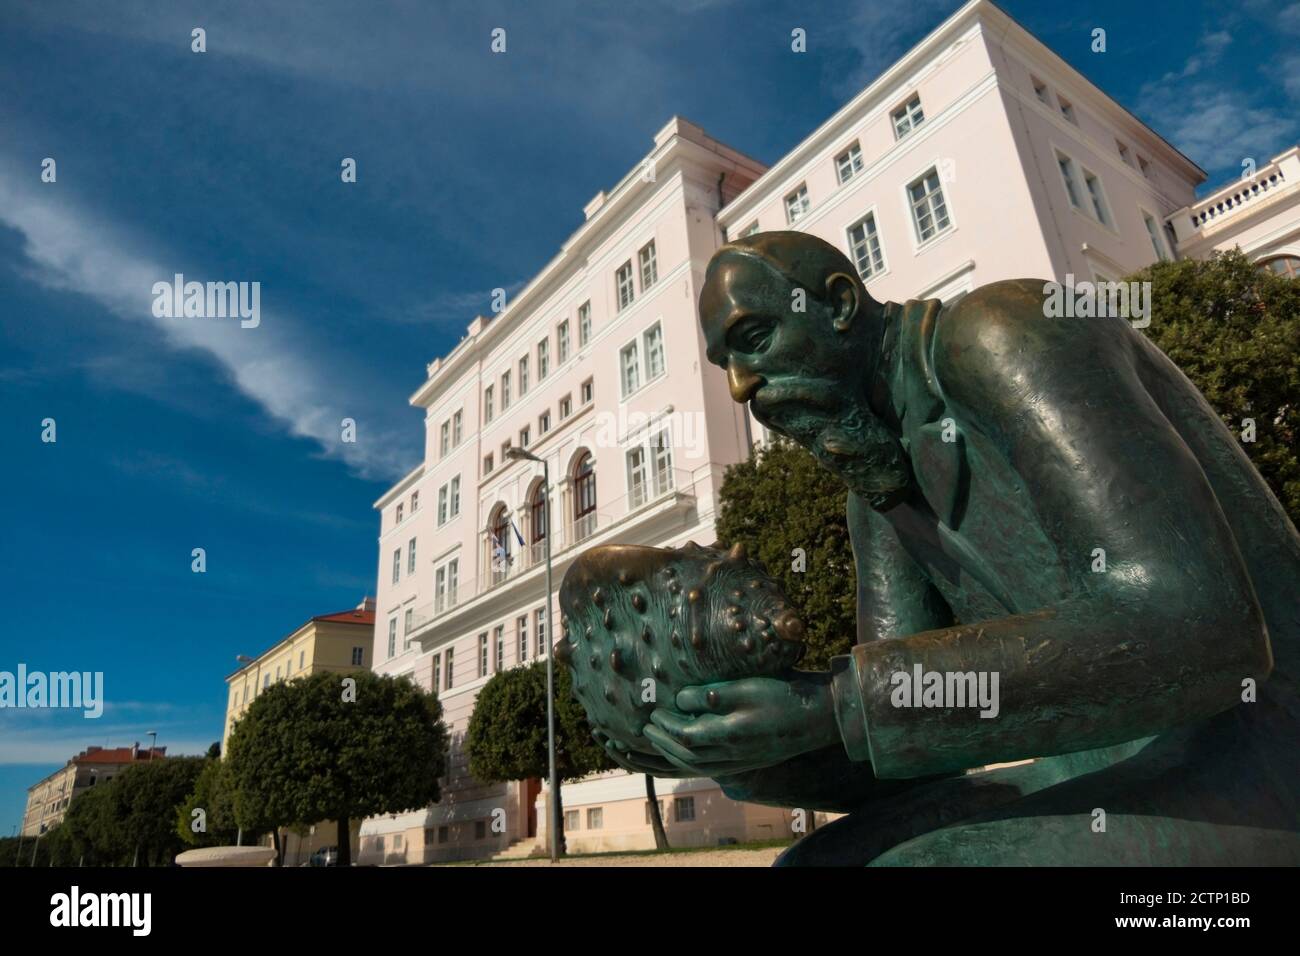 Eingang zum Rektorat der Universität Zadar, Kroatien. Denkmal von Spiridon Brusina, kroatischer Malakologe. Statue des Bildhauers Ratko Petric. Stockfoto